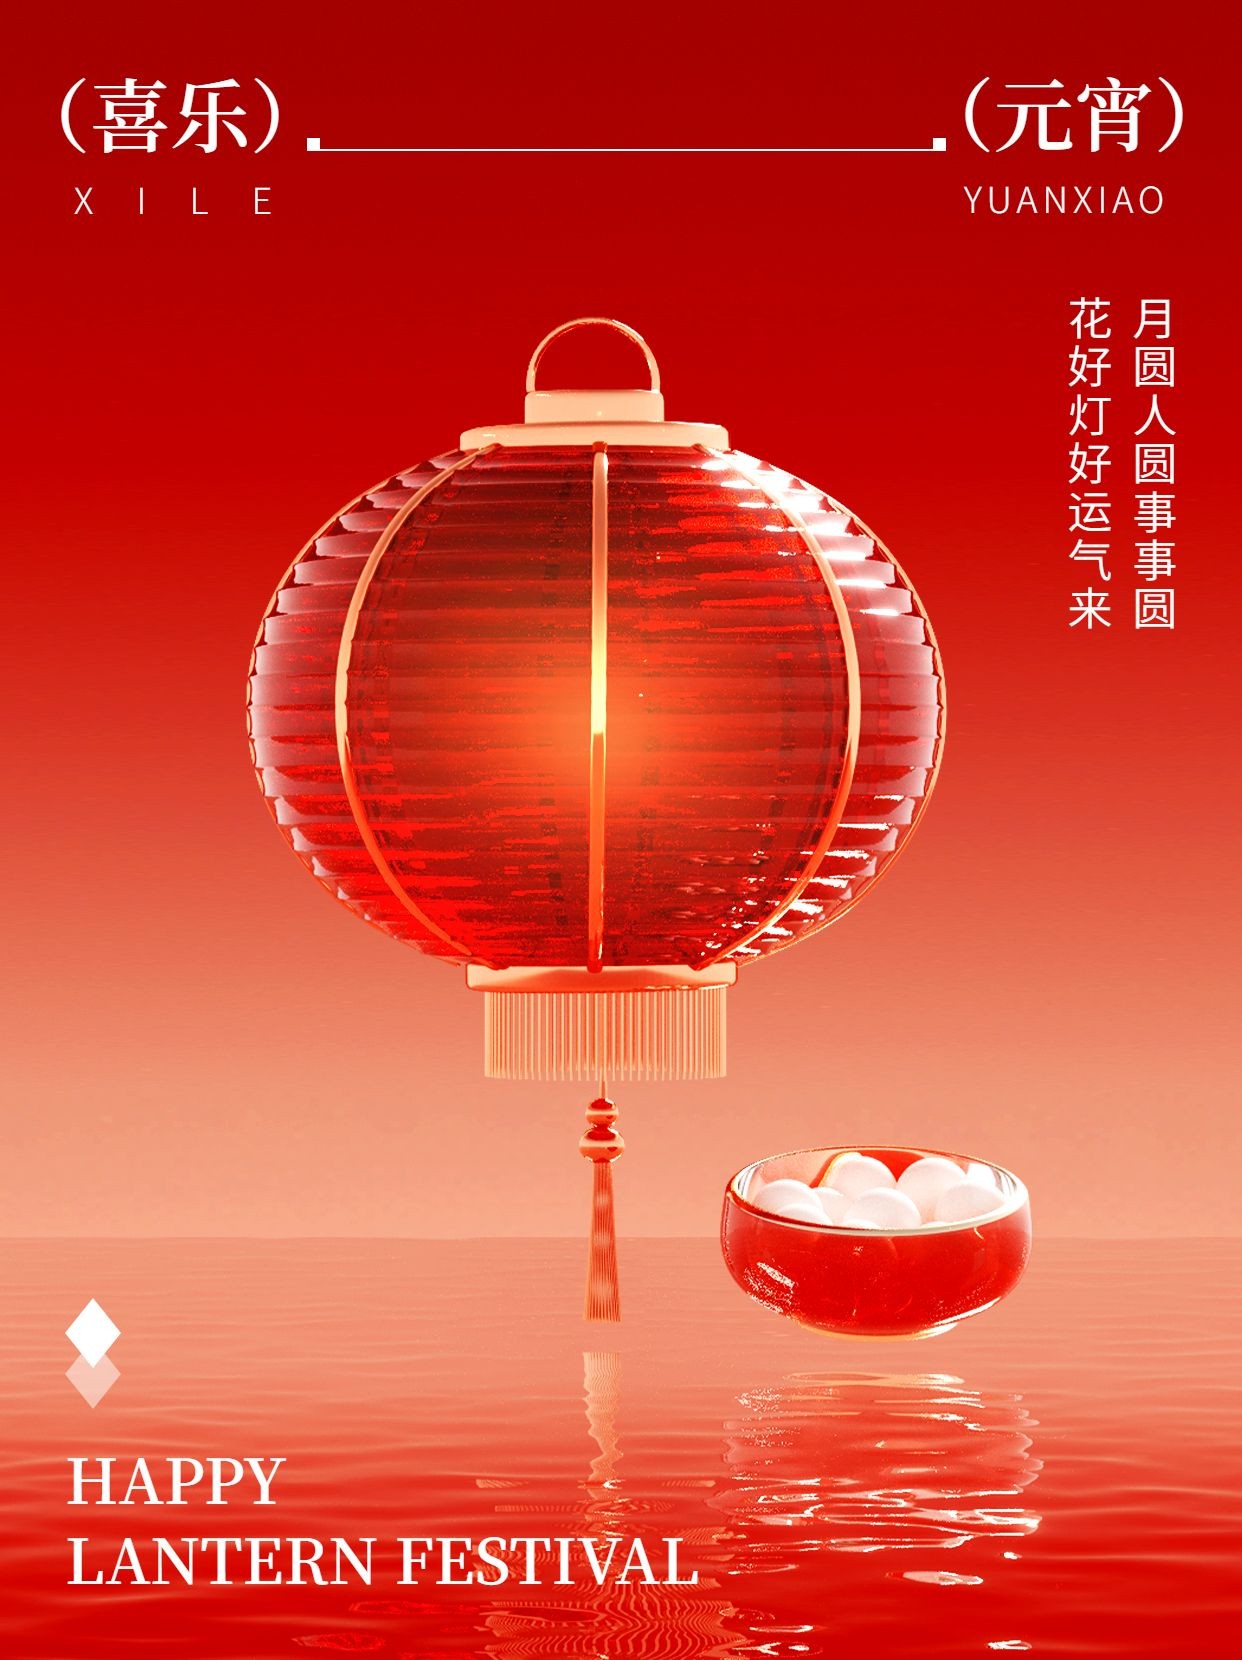 元宵节节日祝福3d玻璃灯笼小红书封面预览效果